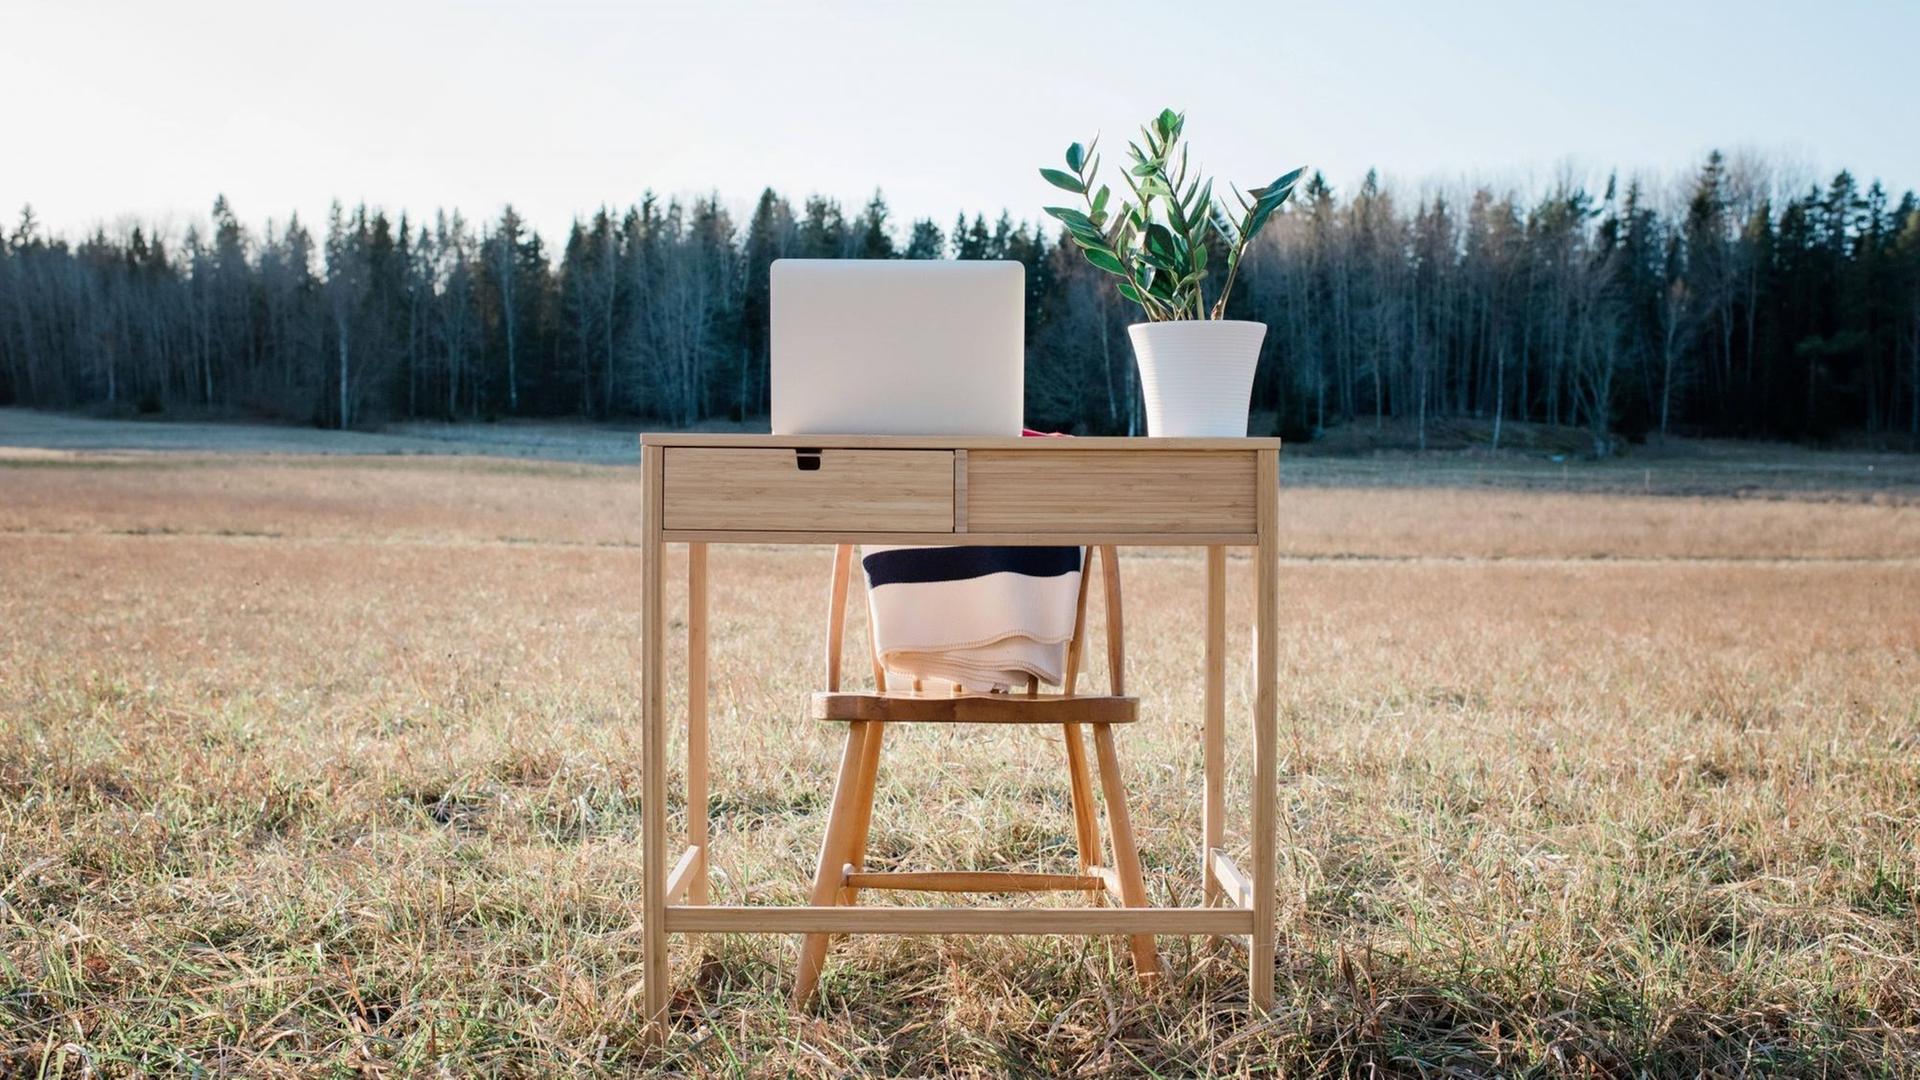 Ein Schreibtisch mit Laptop und Topfpflanze steht auf einem Feld.